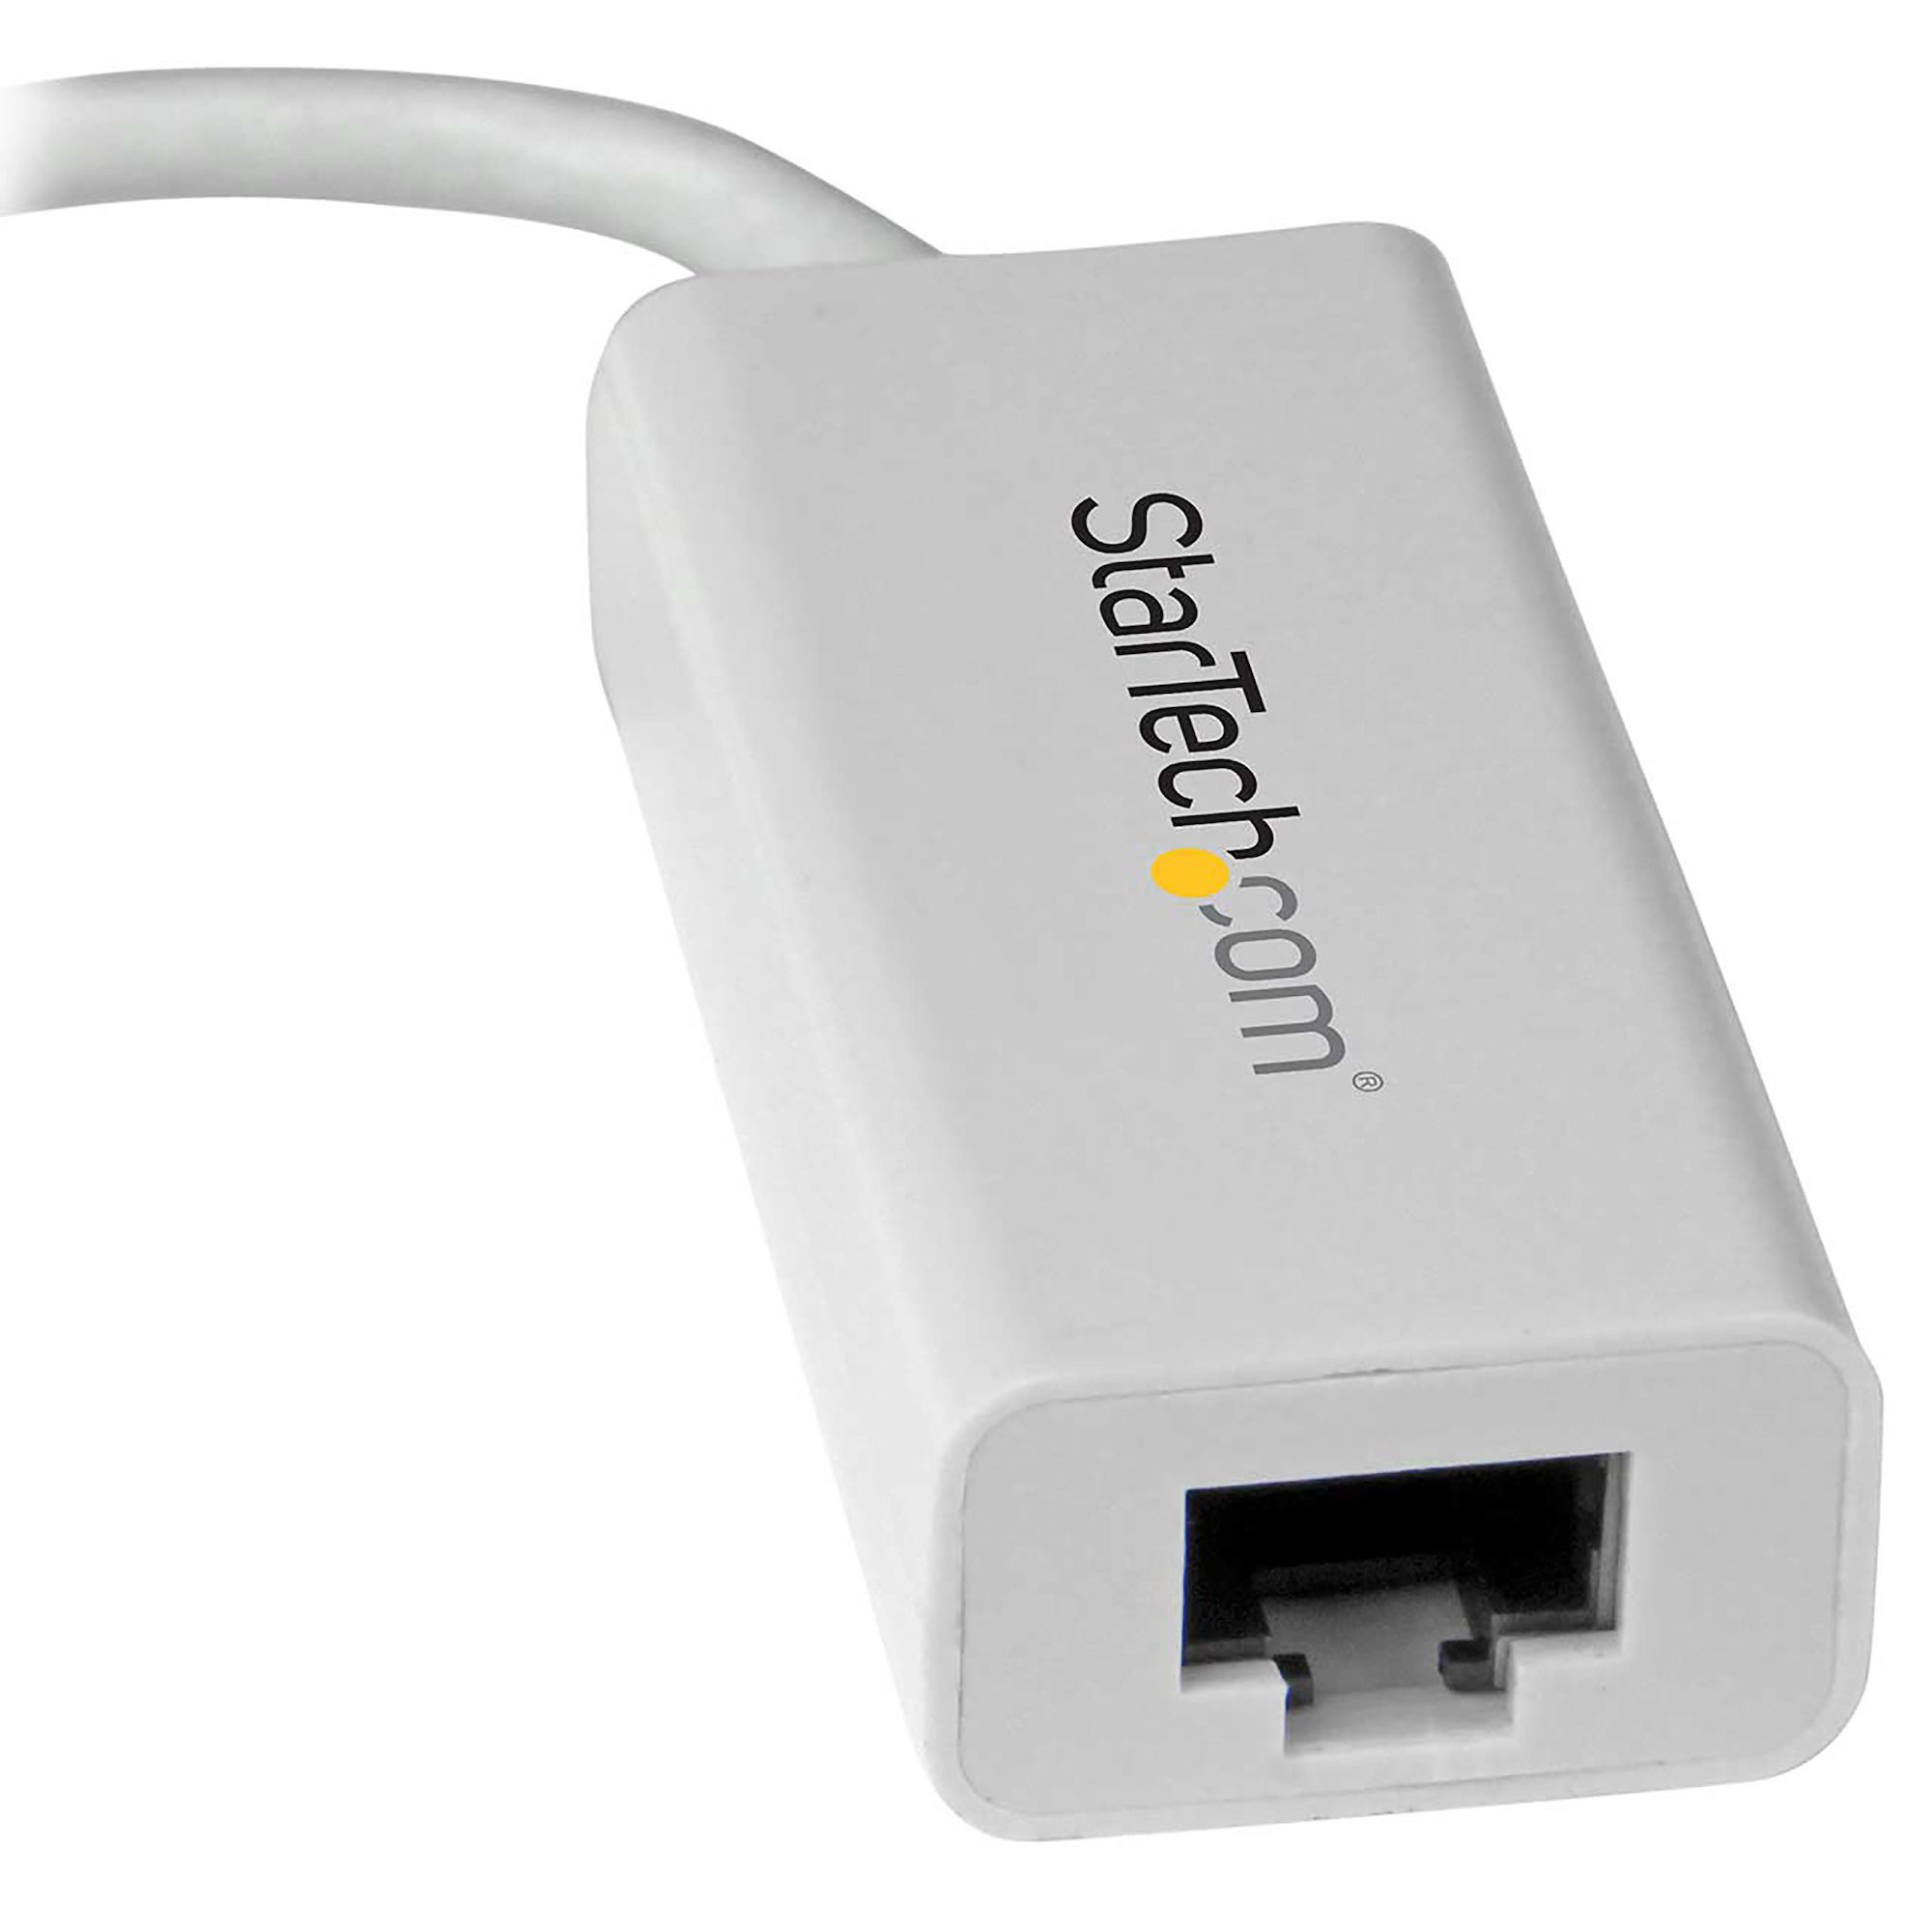 StarTech.com Adaptador de Red Gigabit USB-C - USB 3.1 Gen 1 (5 Gbps) - Blanco